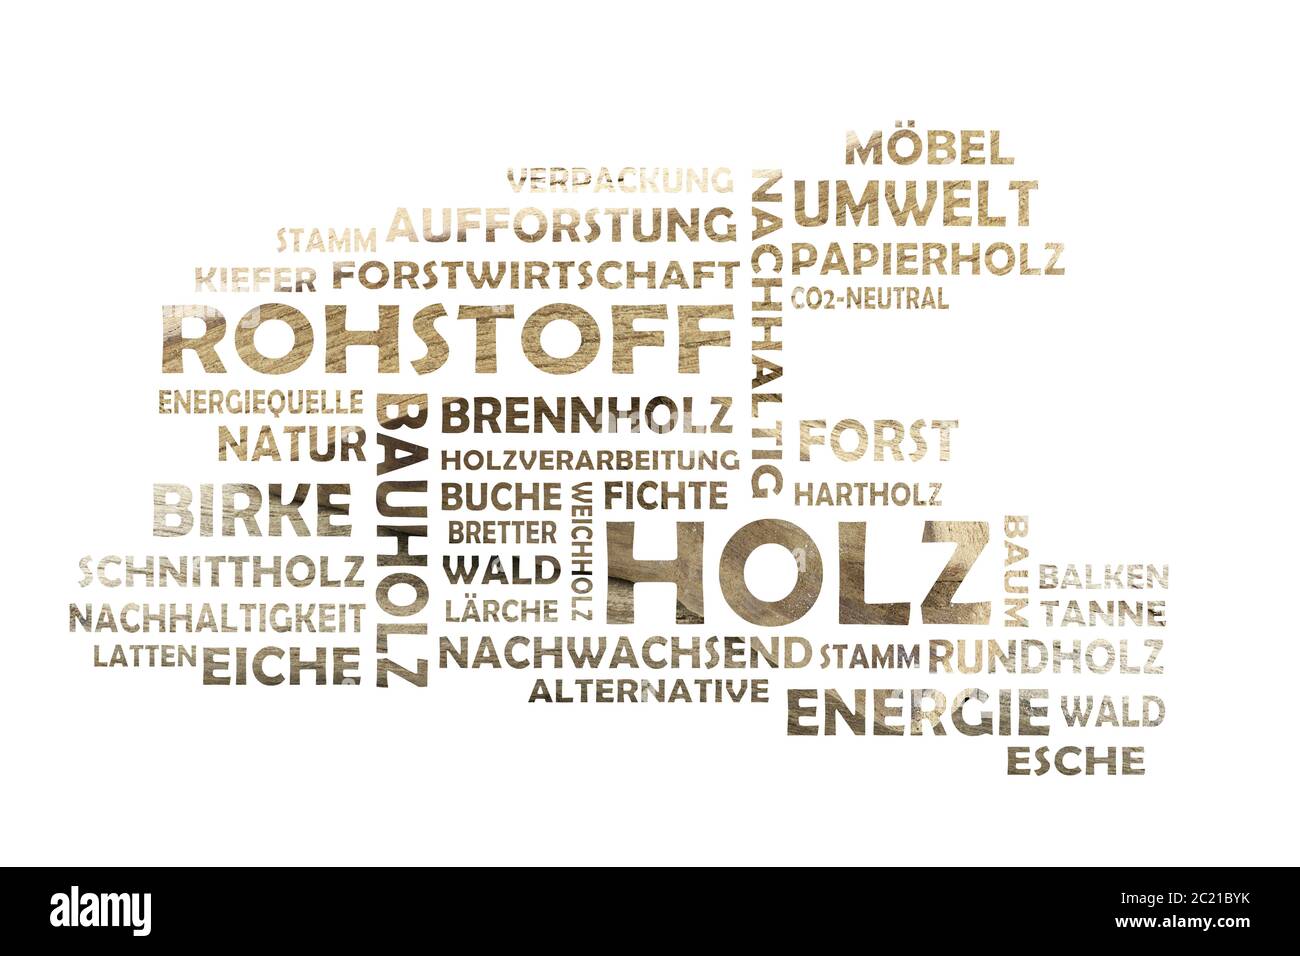 Nuage de mot coupé de mots-clés allemands pertinents au mot principal bois Banque D'Images